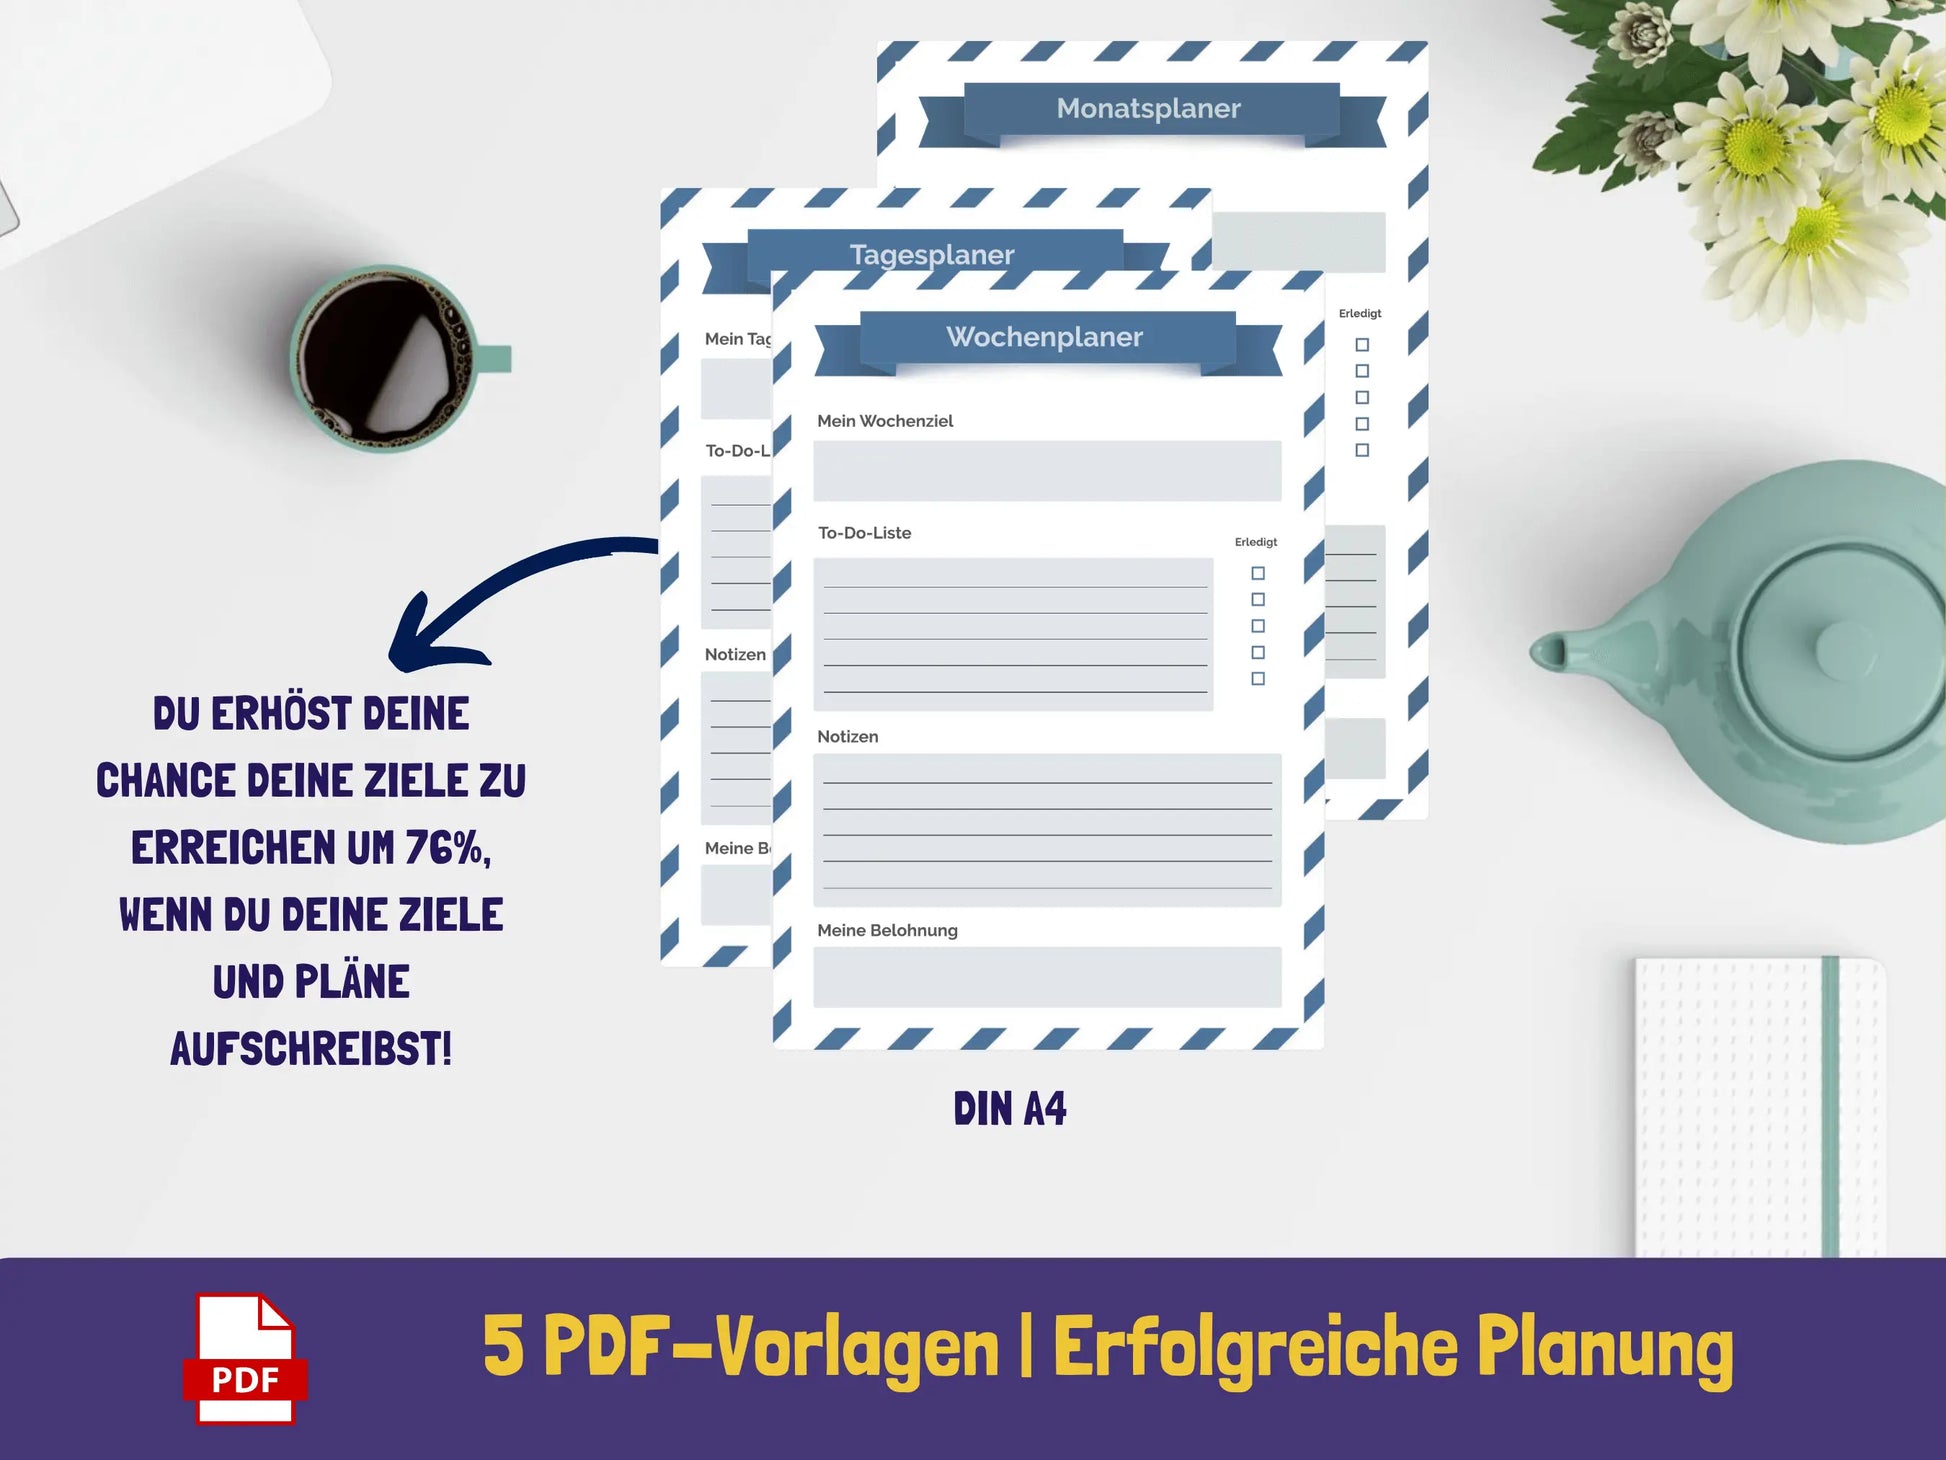 Tages-, Wochen-, Monatsplaner {5 Seiten} PDF AndreasJansen Vorlage